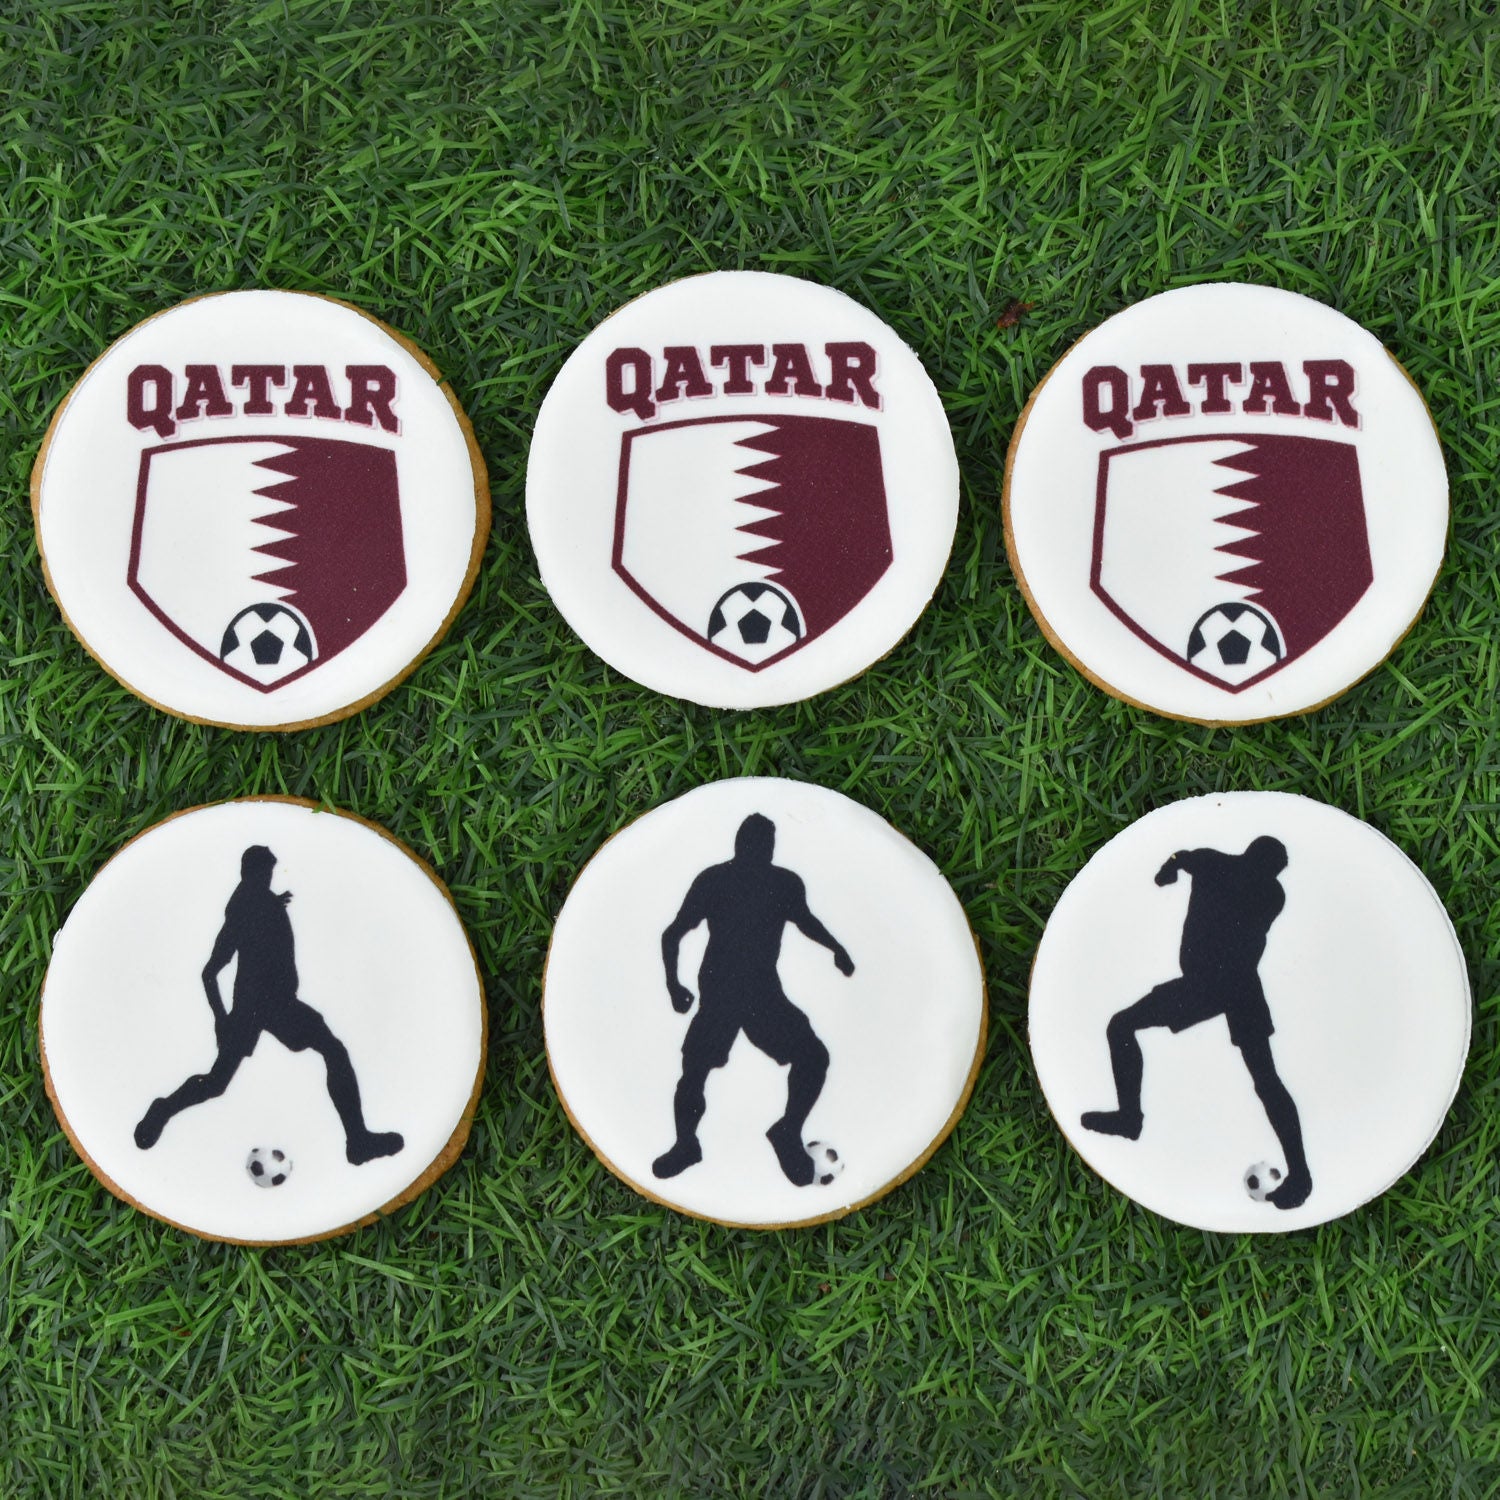 كوكيز كرة قدم قطر